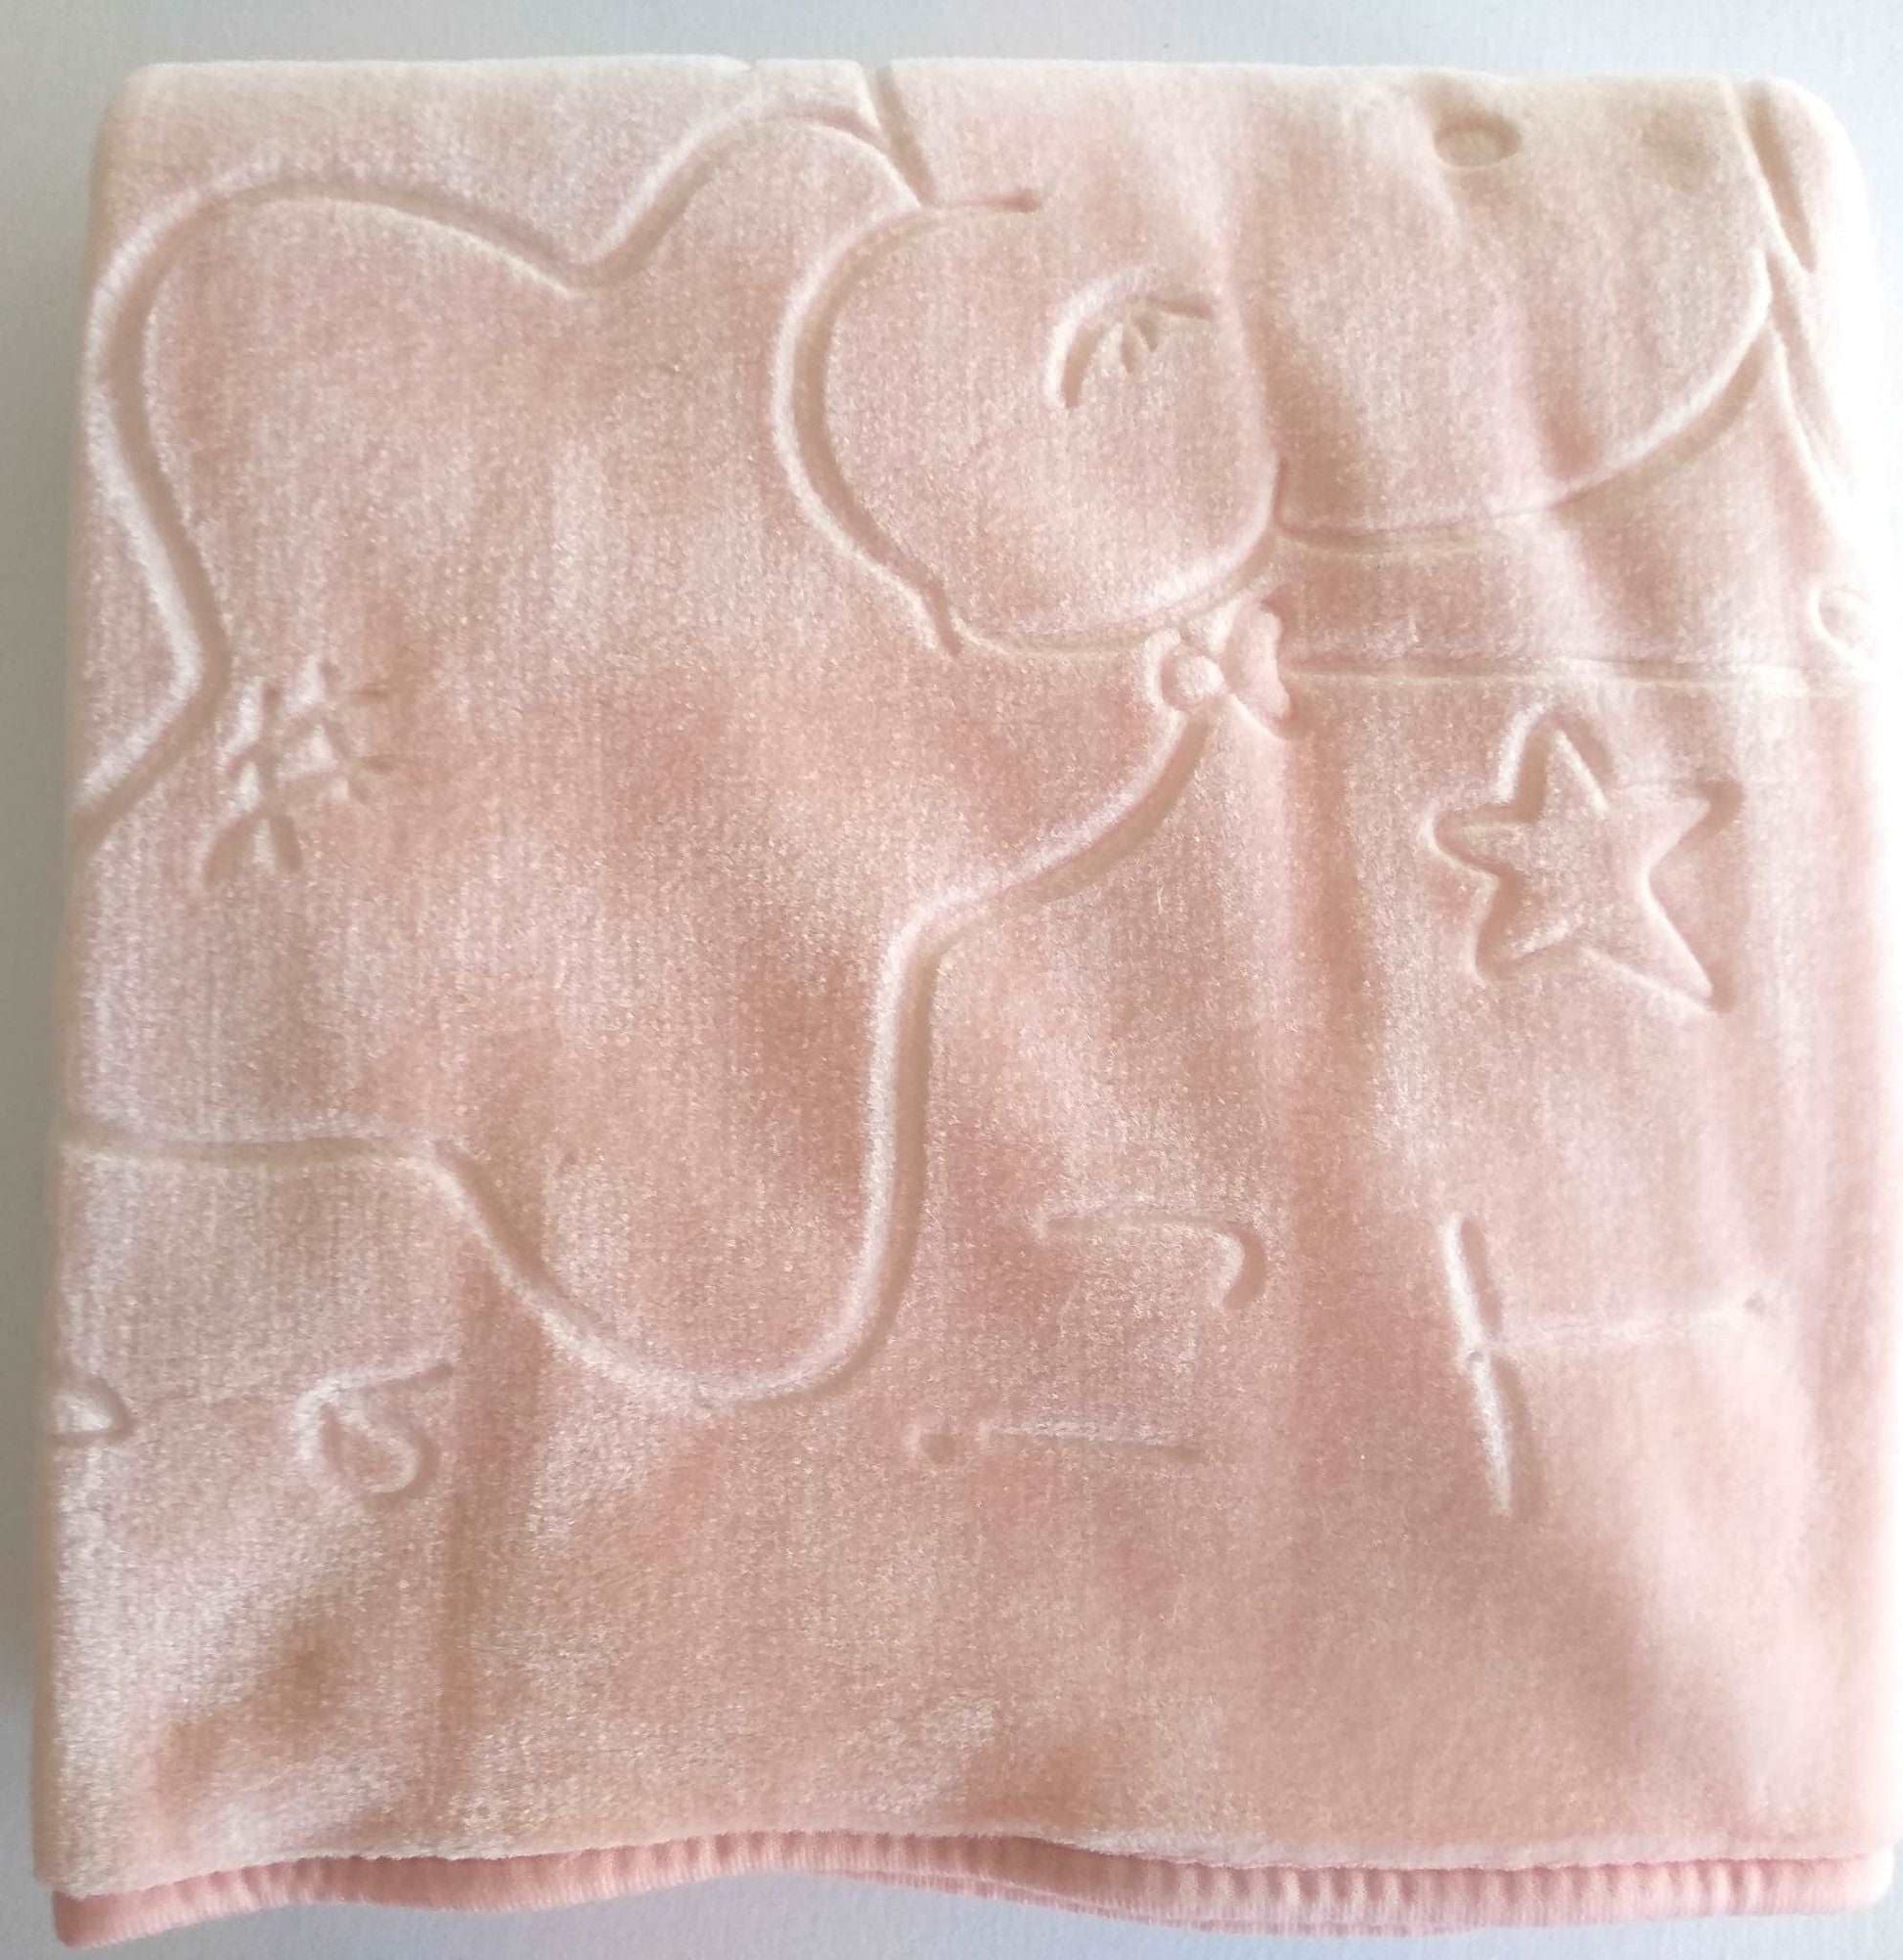 Cobertor para bebé